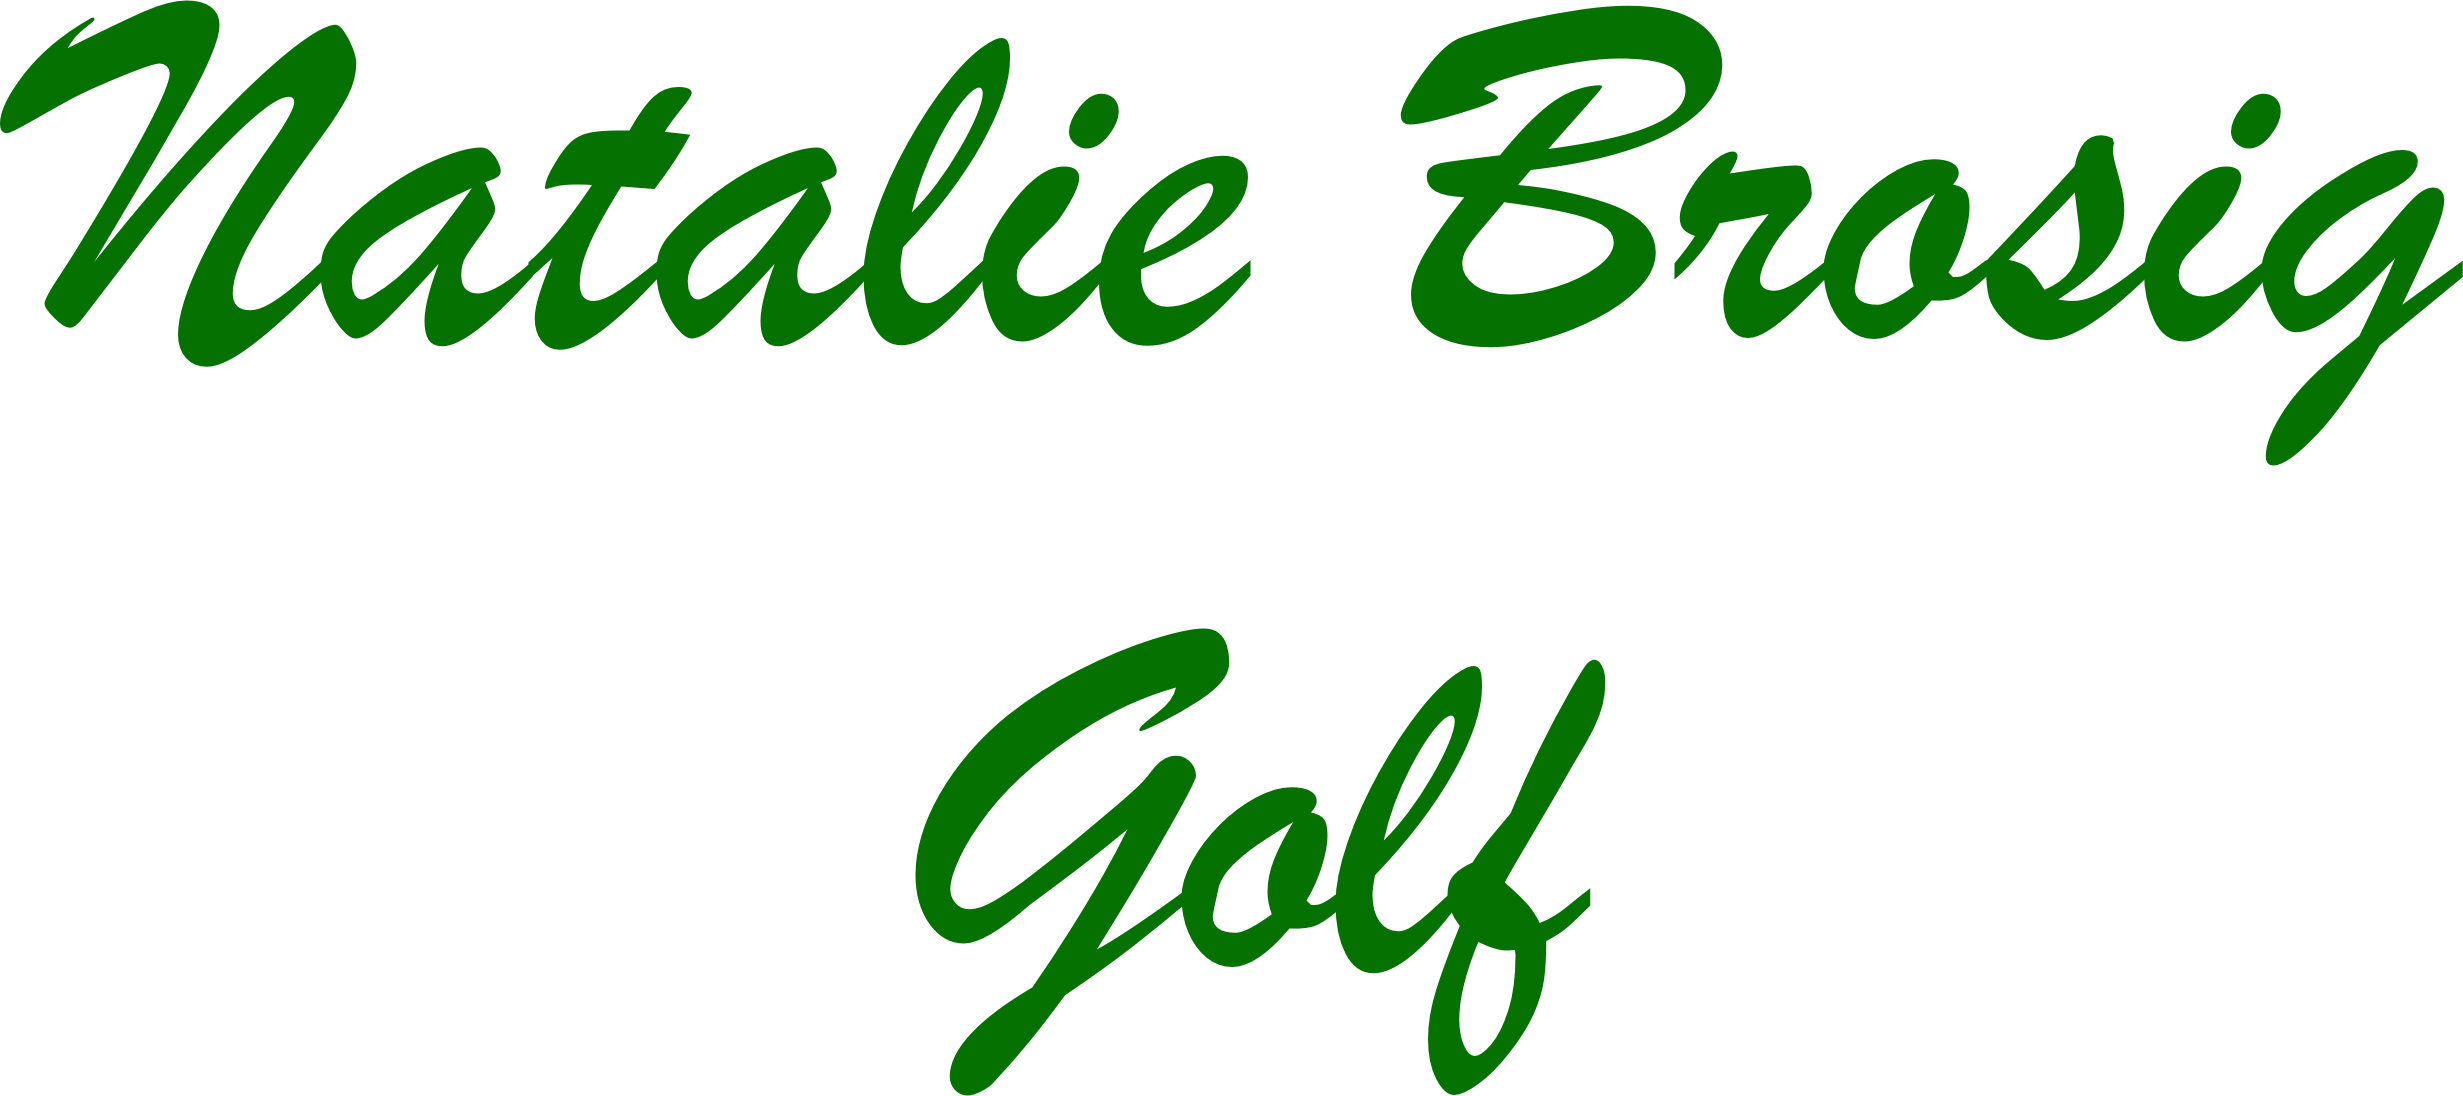 Natalie Brosig Golf